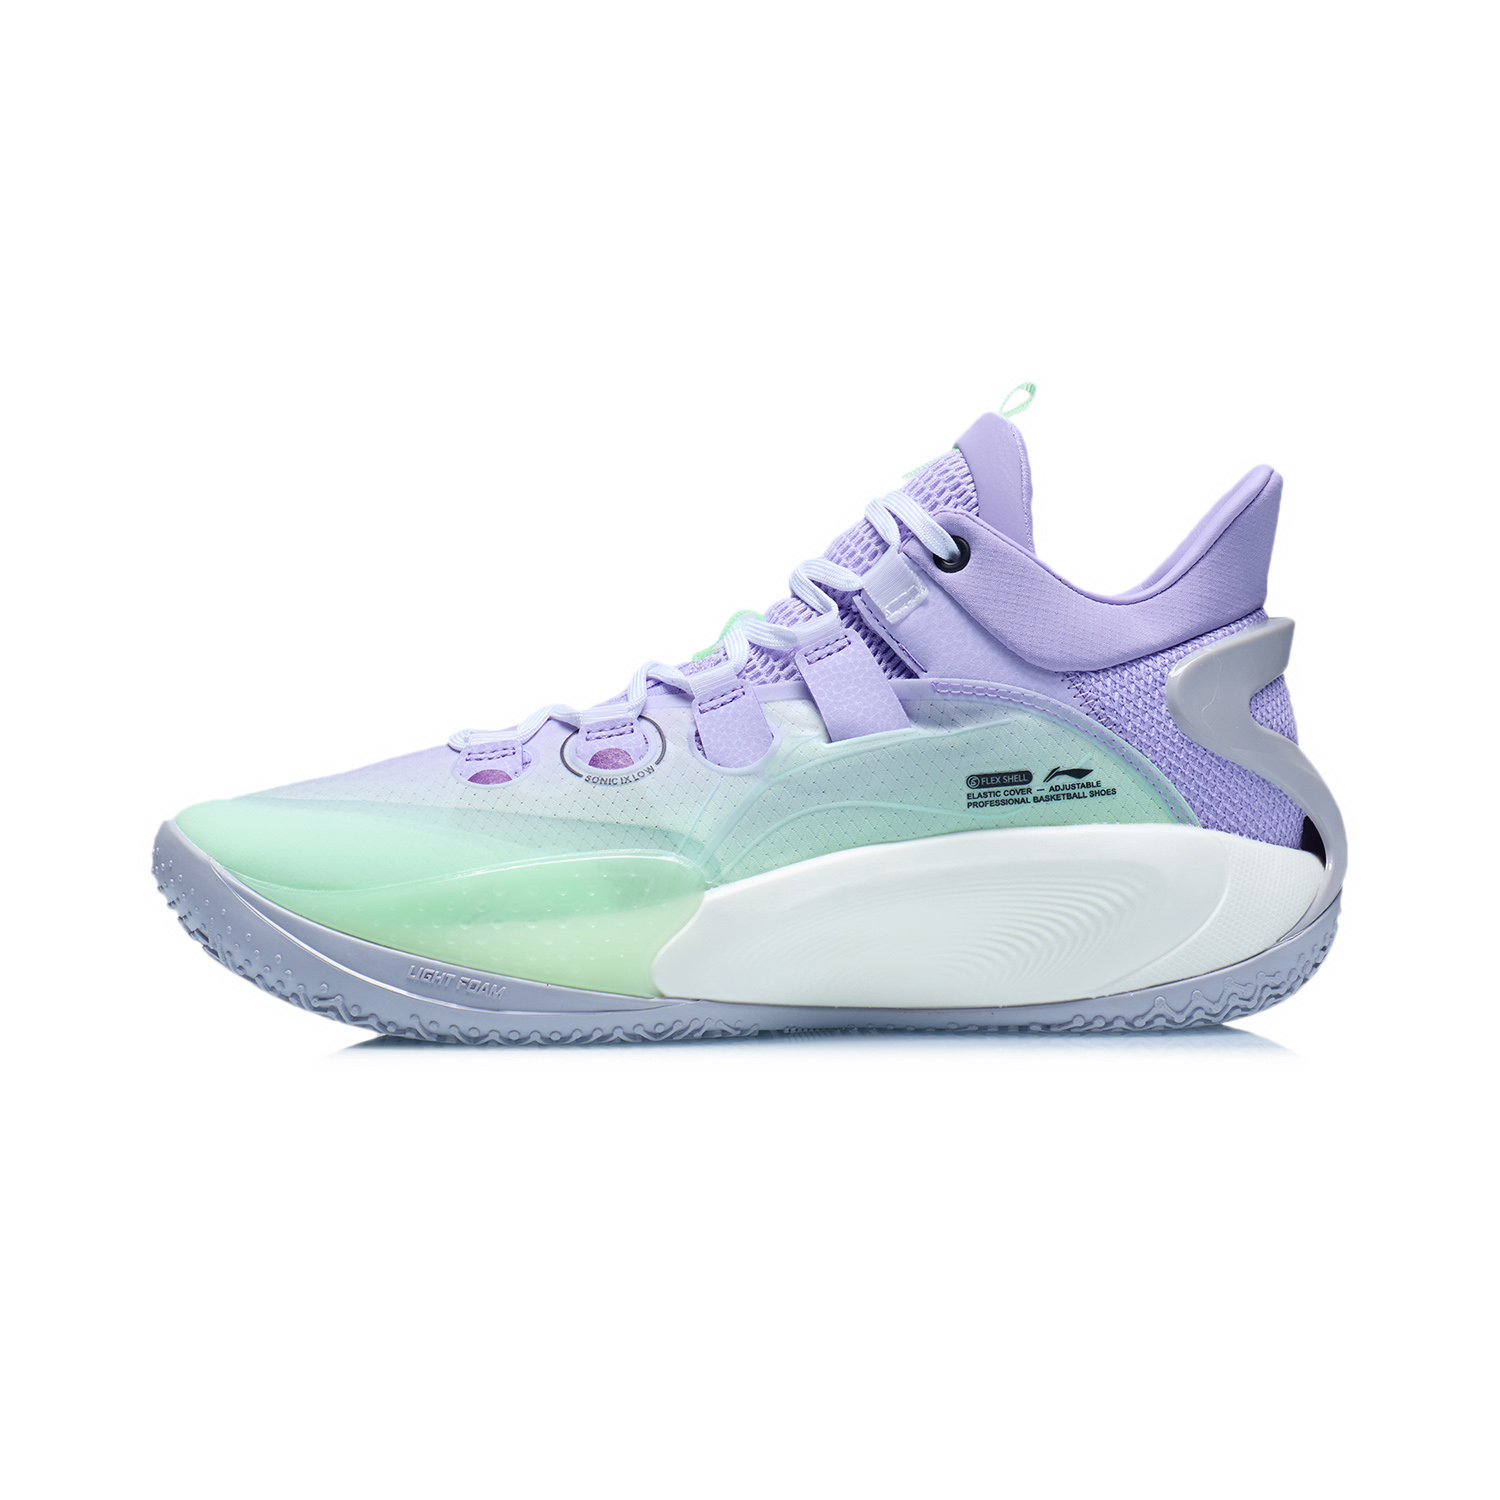 音速9 Low 實戰籃球鞋 - 淡柔紫/螢光粉綠